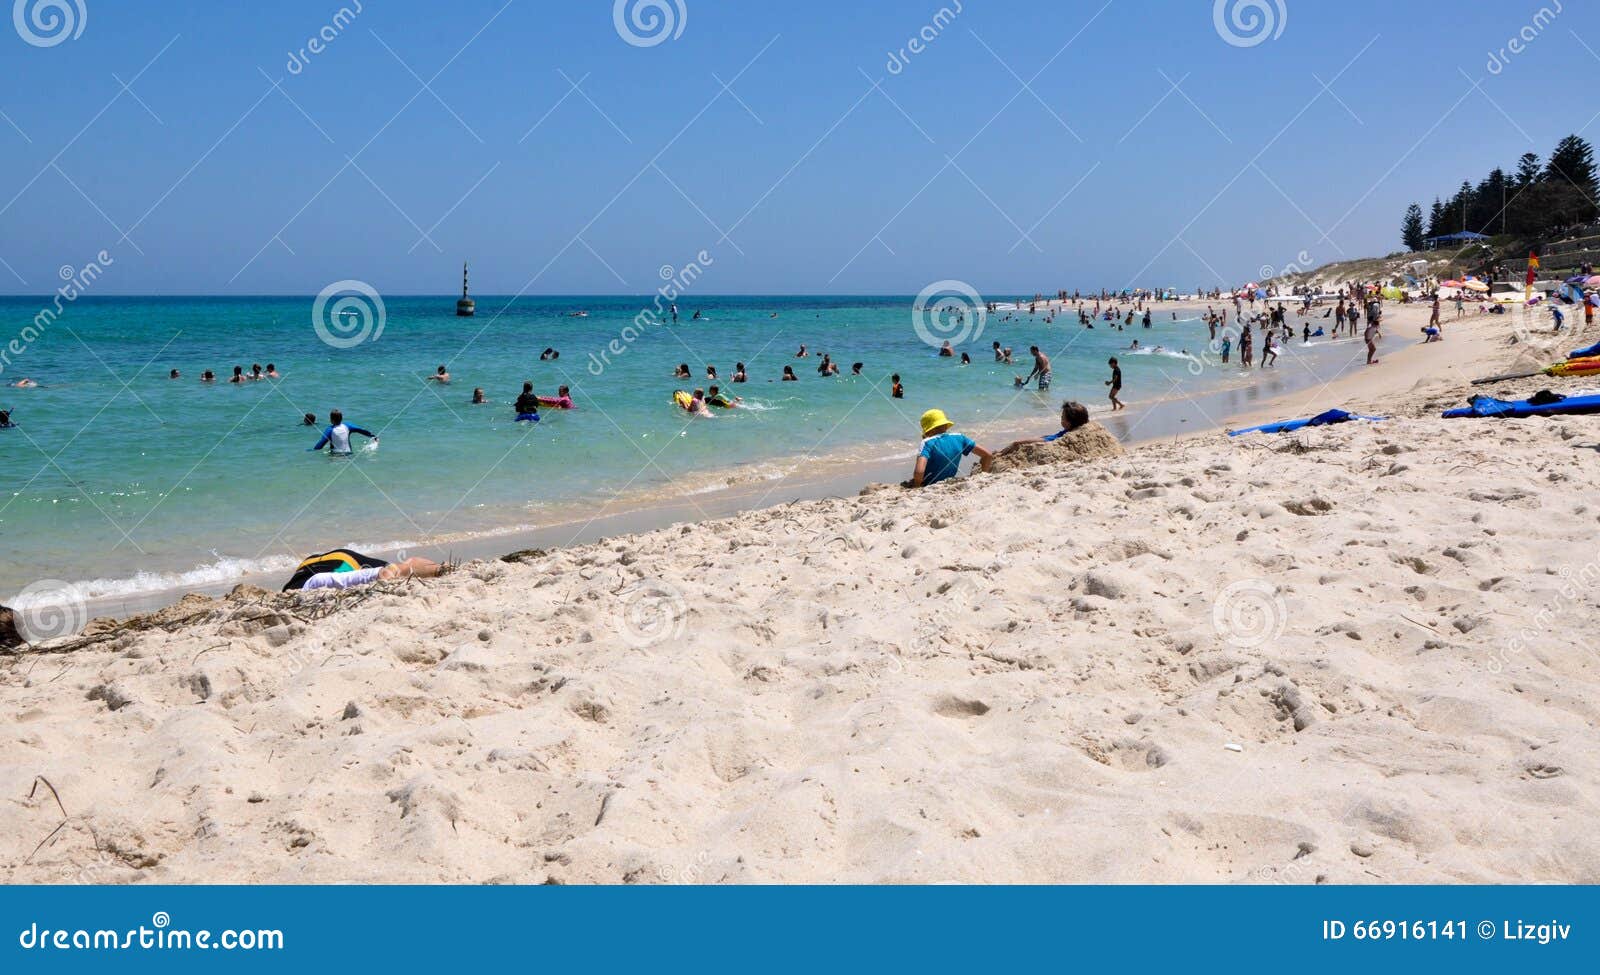 Coupure d'été : Plage de Cottesloe, Australie occidentale. COTTESLOE, WA, AUSTRALIA-JANUARY 6,2016 : La scène de plage de Cottesloe avec des familles nageant et l'embarquement de corps dans l'Océan Indien de turquoise arrose dans Cottesloe, Australie occidentale